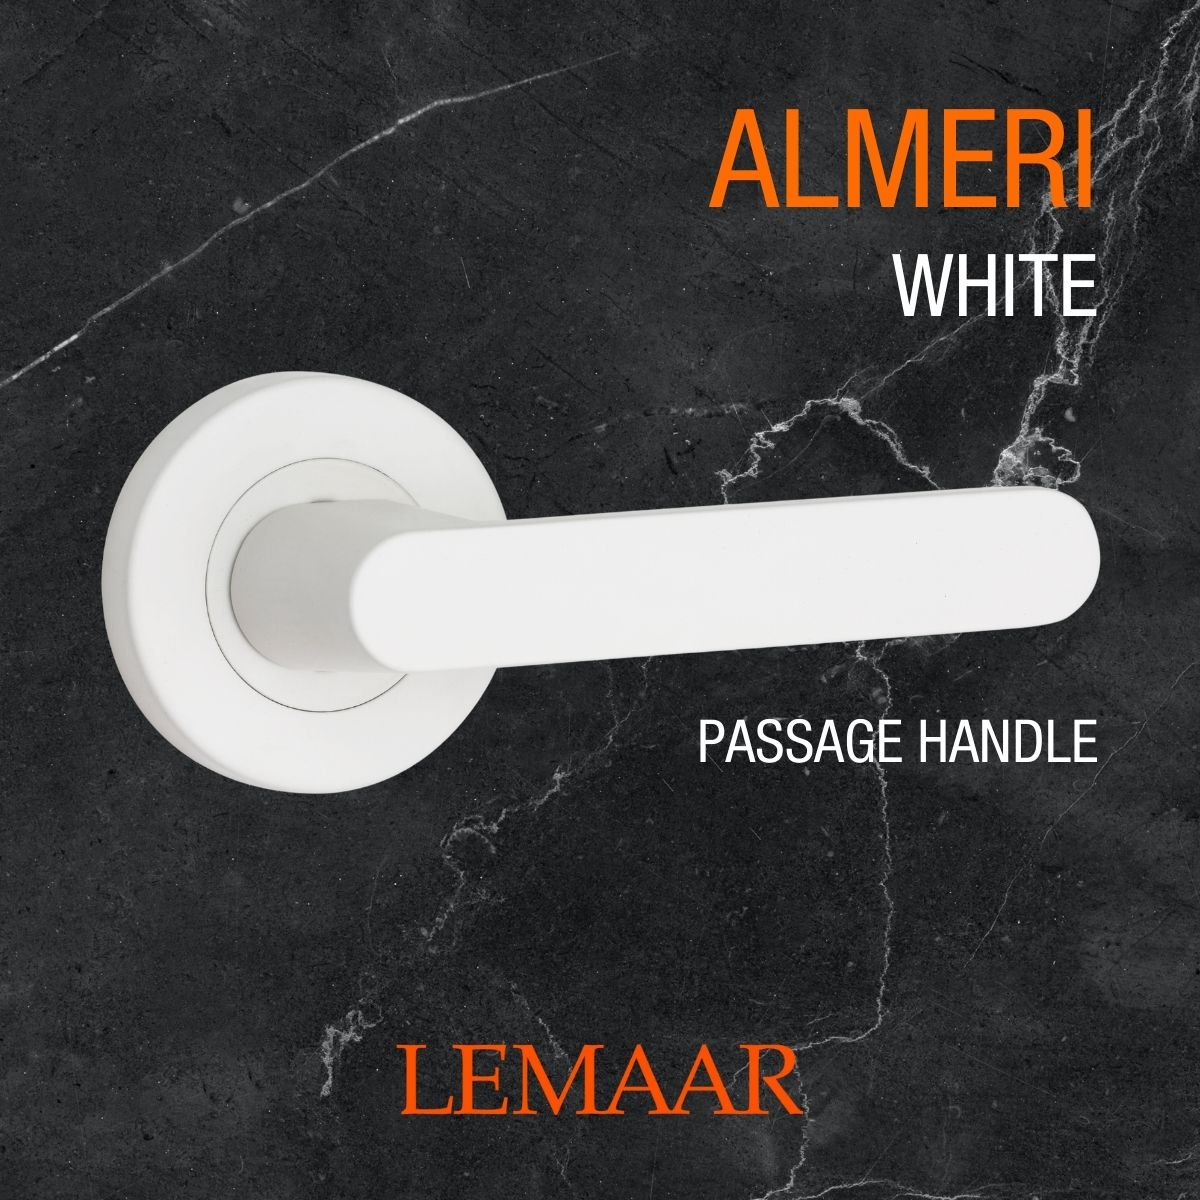 almeri white door handle lemaar v4